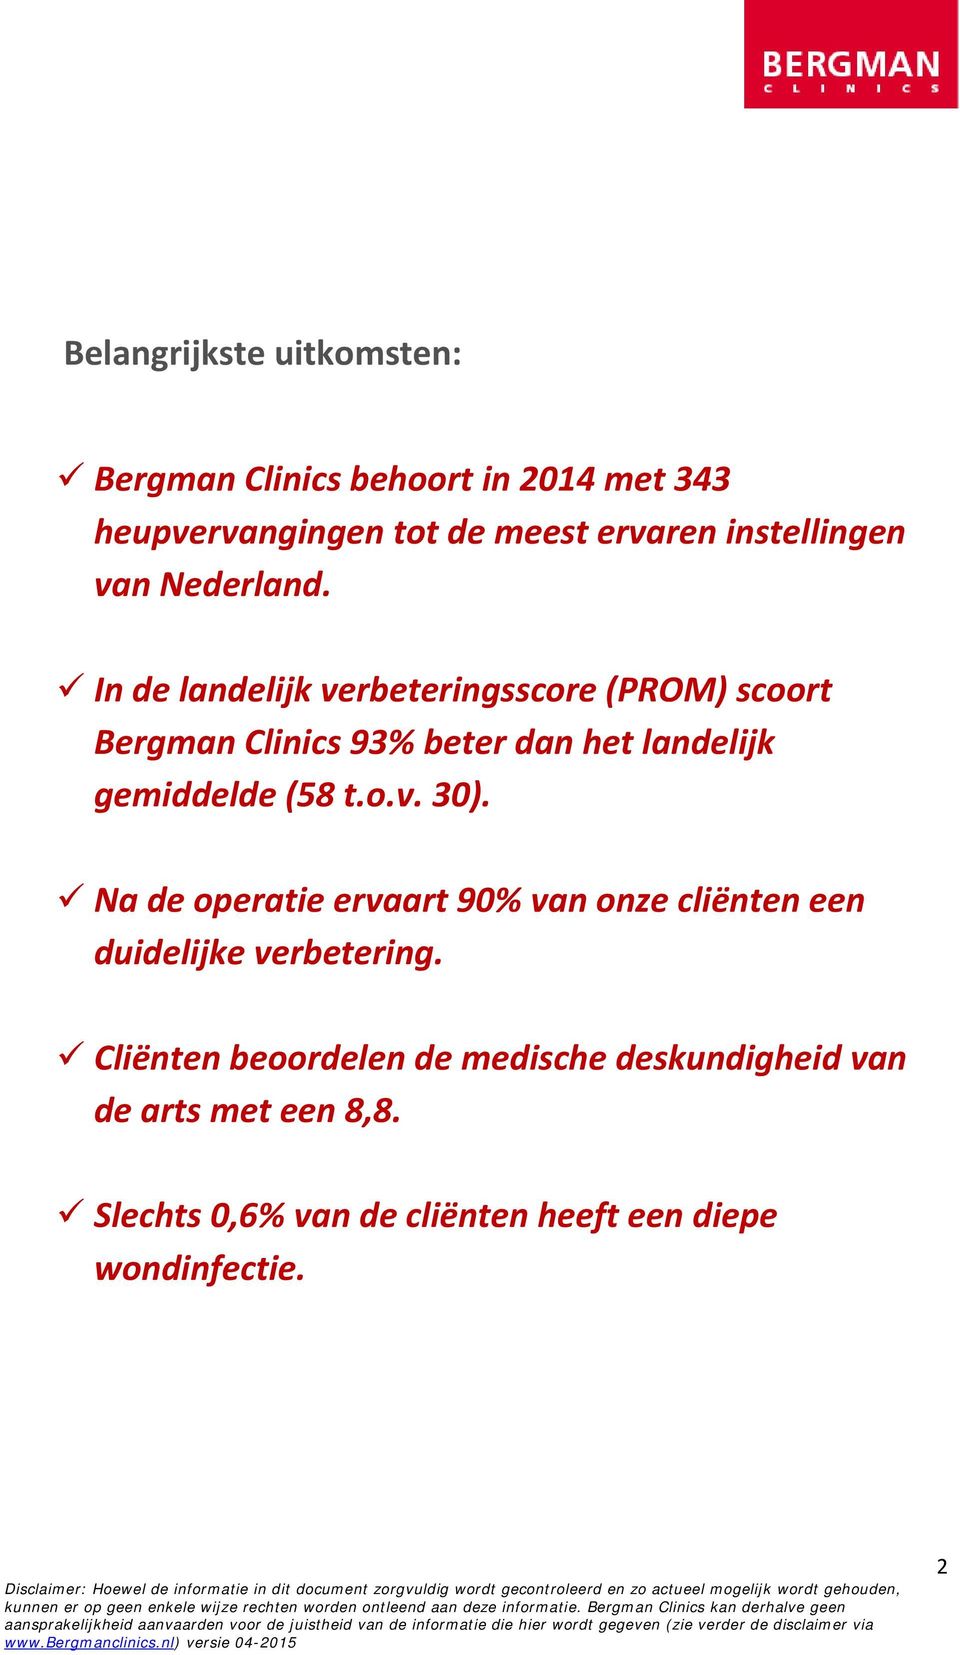 In de landelijk verbeteringsscore (PROM) scoort Bergman Clinics 93% beter dan het landelijk gemiddelde (58 t.o.v. 30).